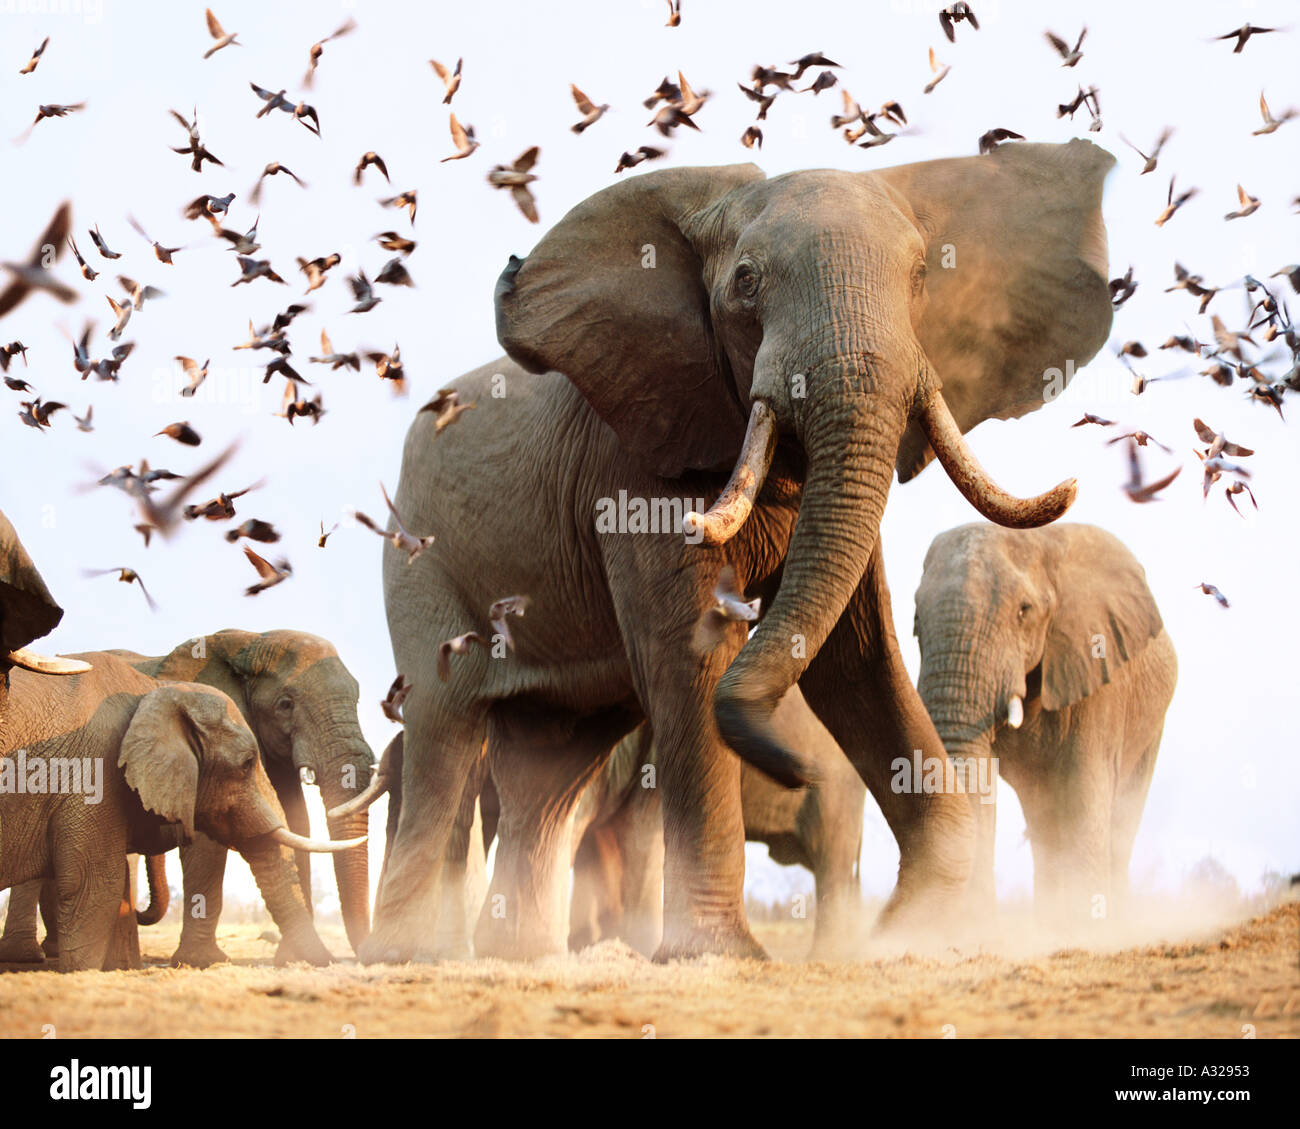 Los elefantes africanos inquietante bandada de pájaros Savuti Botswana Foto de stock